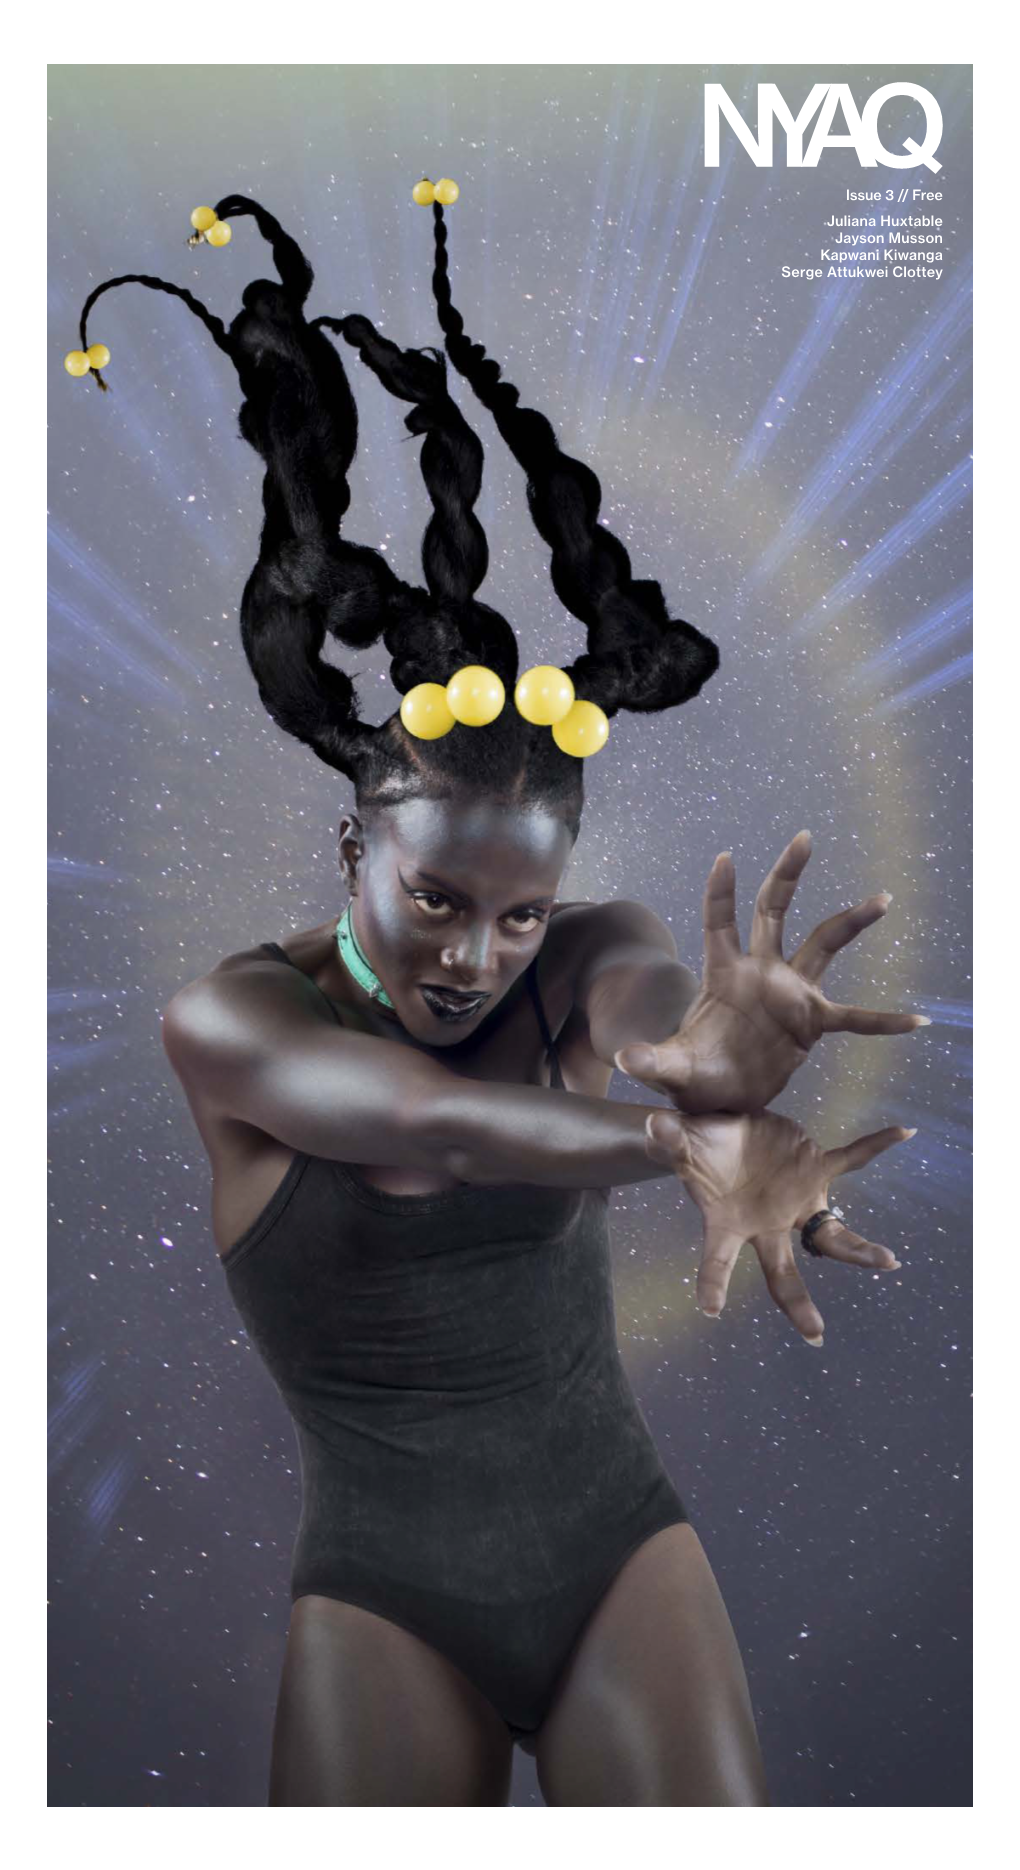 Juliana Huxtable Jayson Musson Kapwani Kiwanga Serge Attukwei Clottey Issue 3 // Free